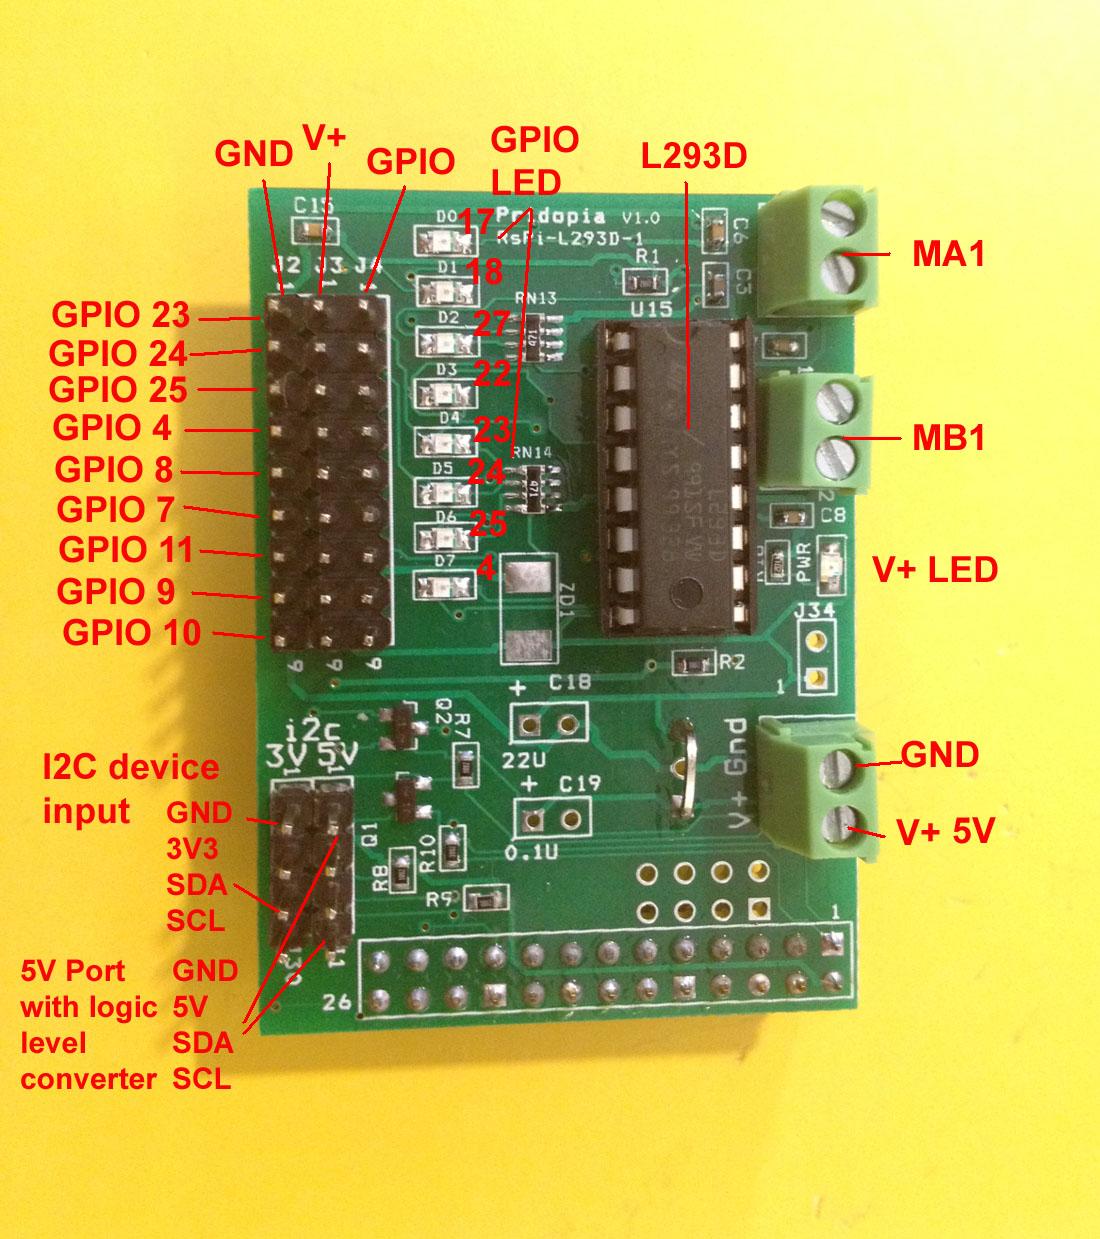 Pridopia - Raspberry Pi 2 Motor Board V1 (L293Dx1)